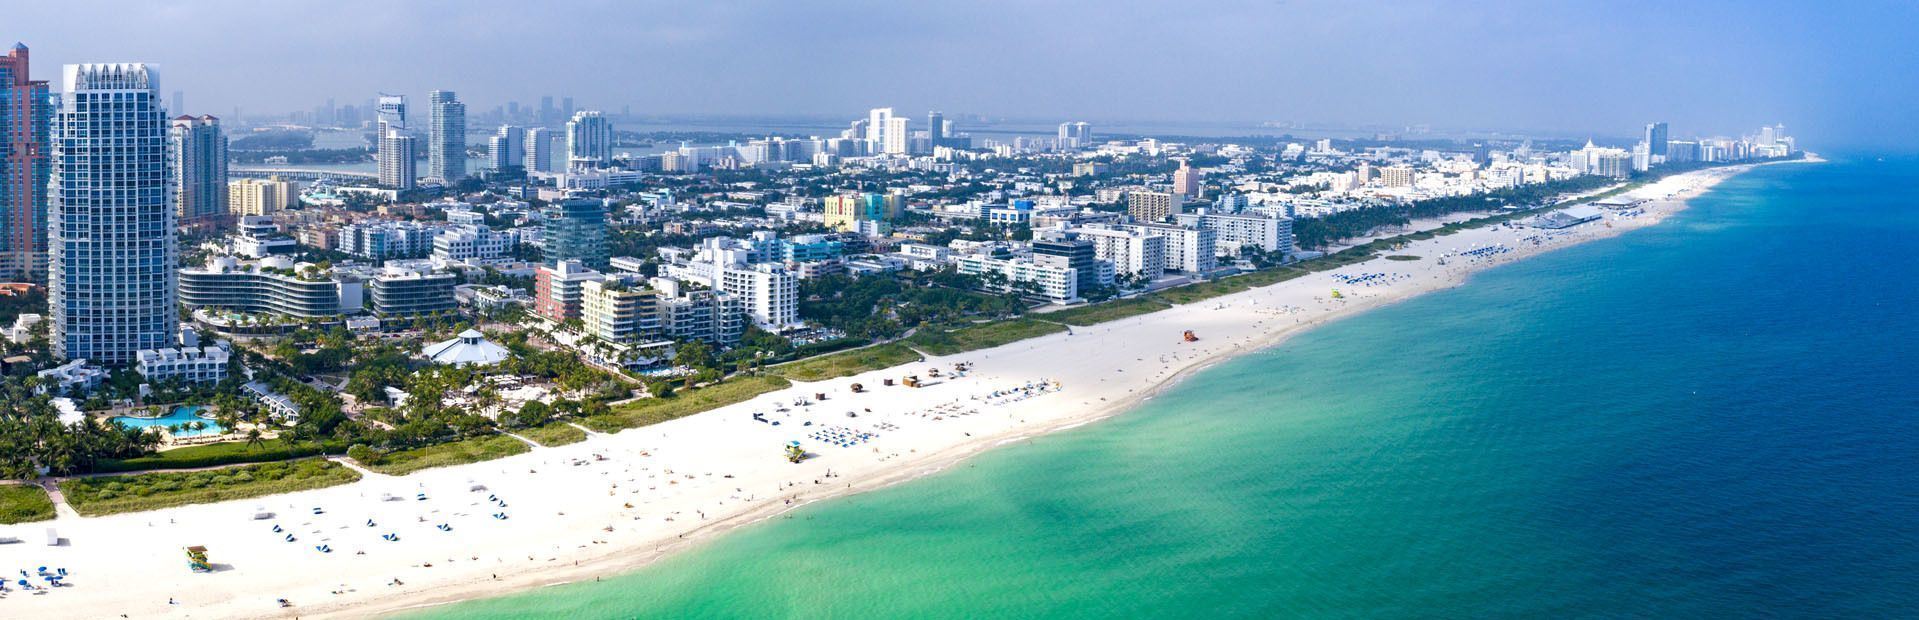 Foto panoramica della costa in Florida - WeRoad